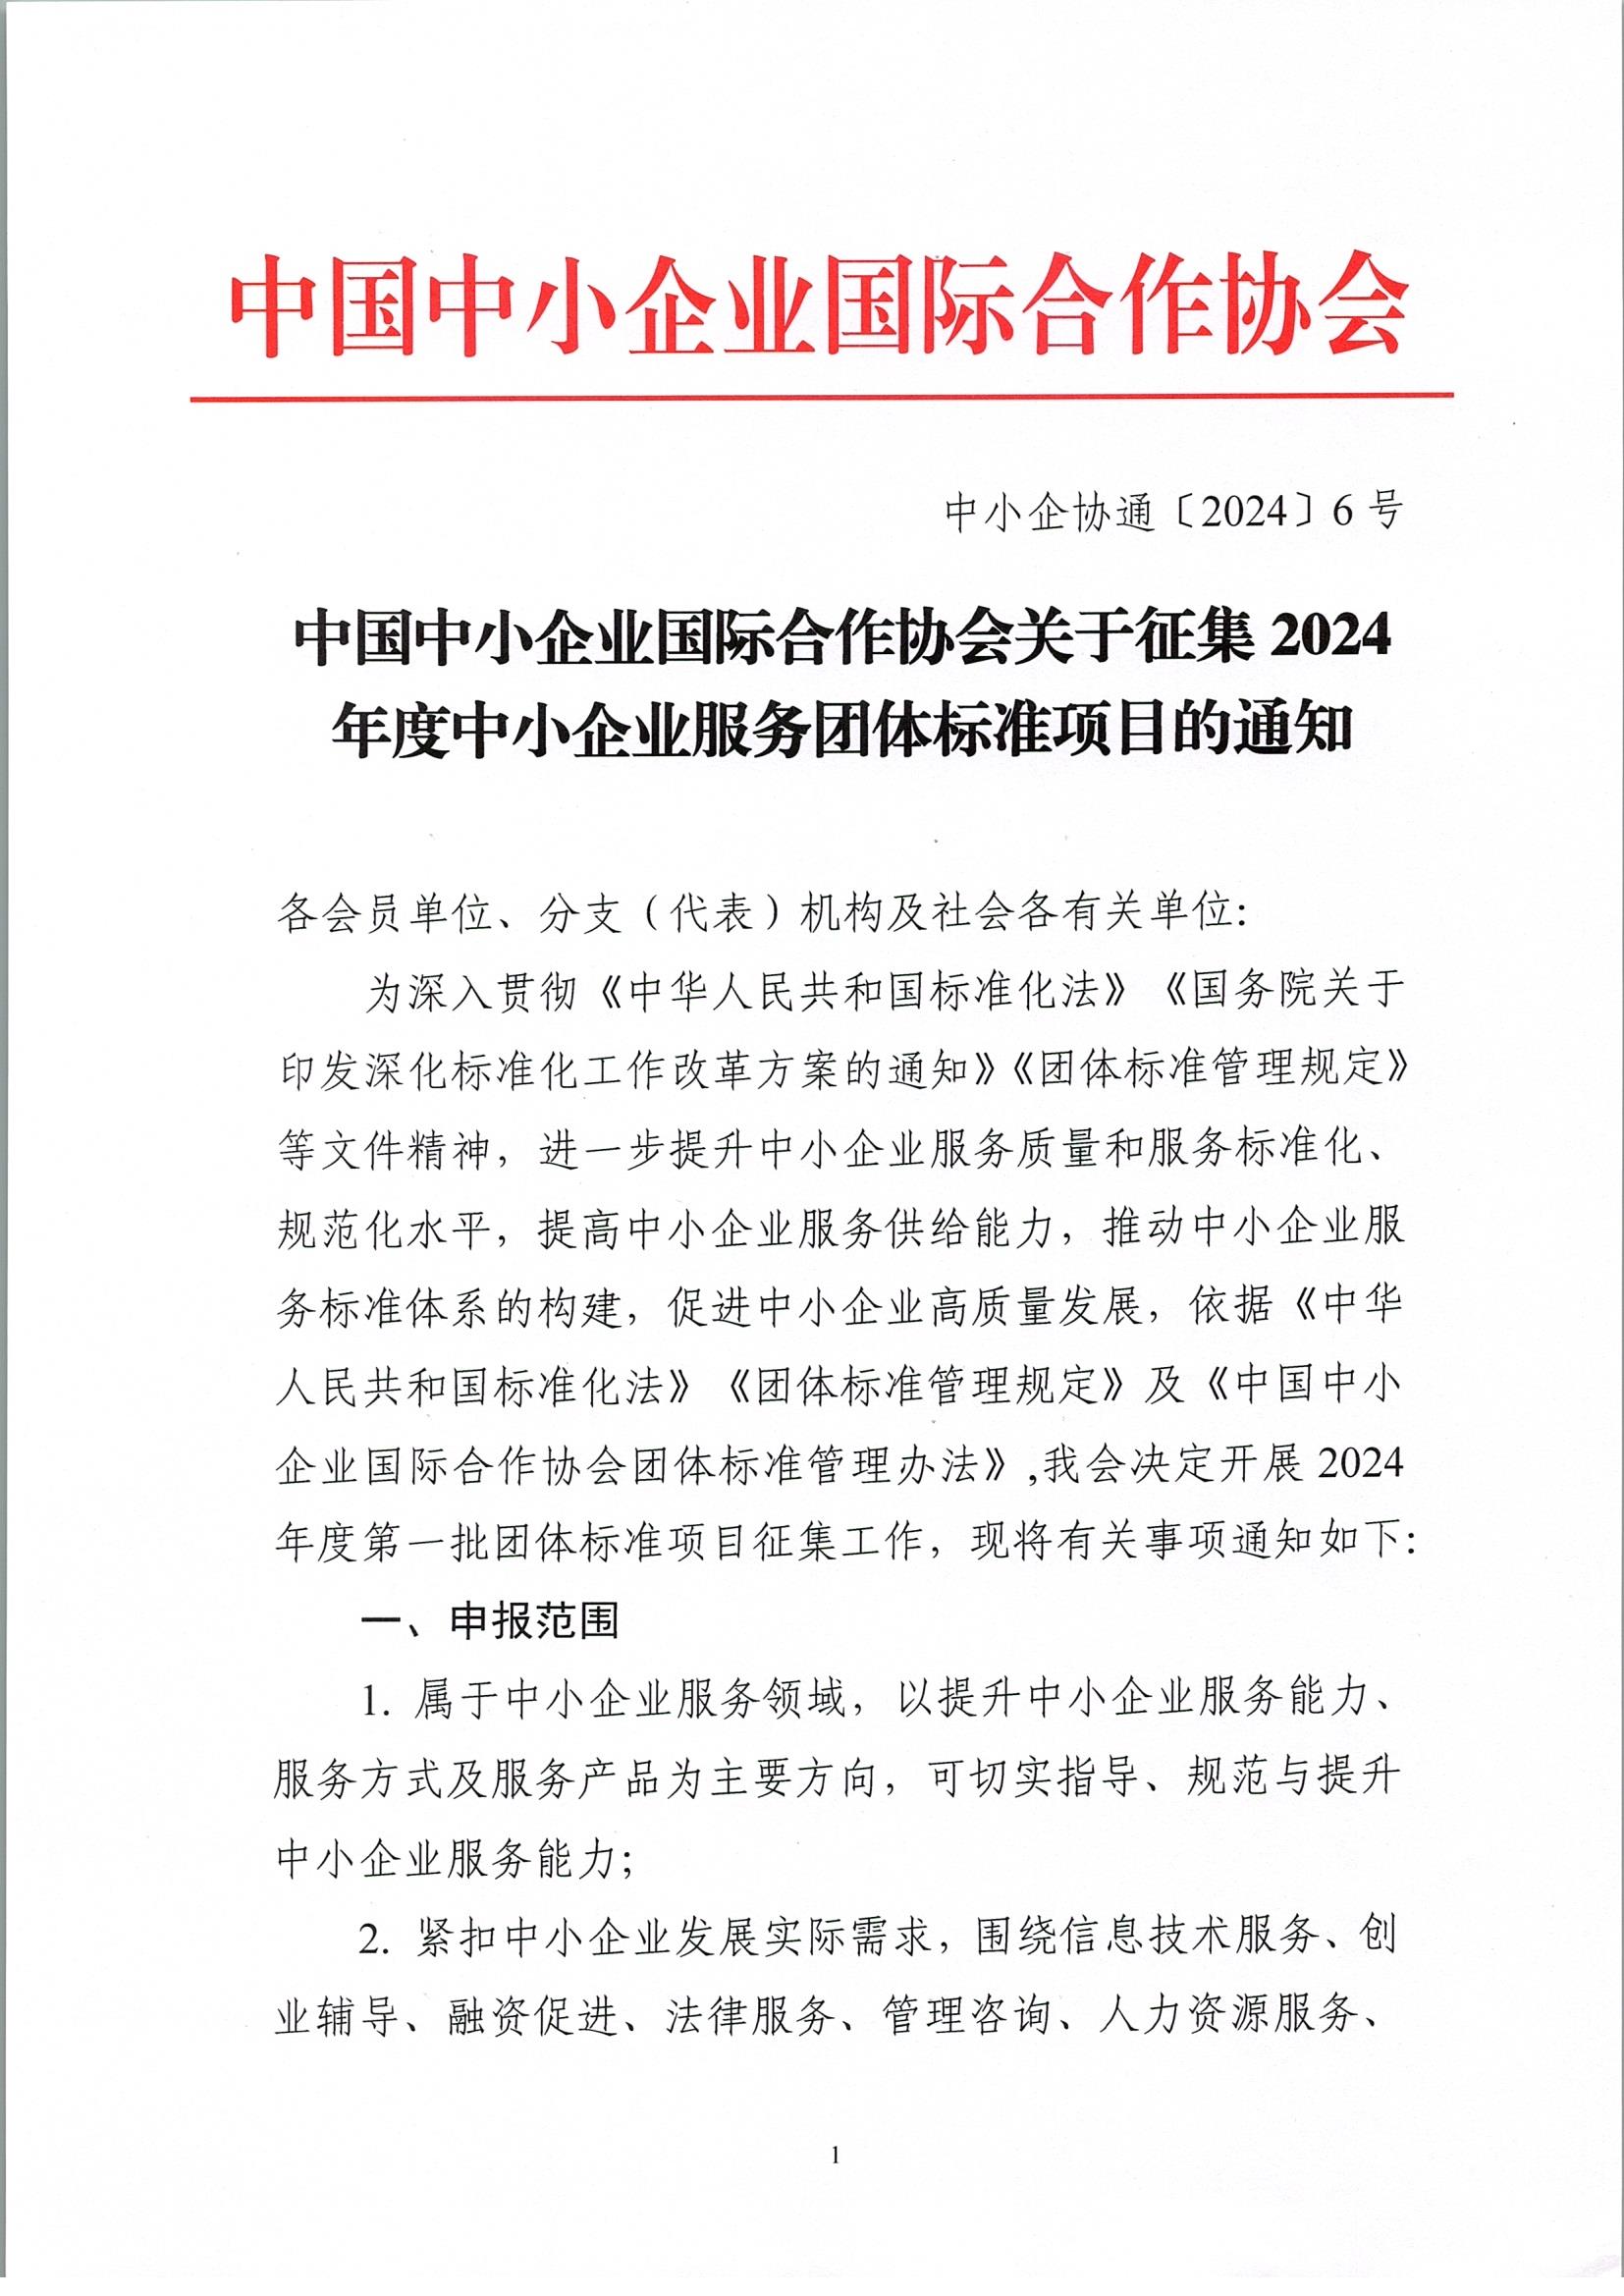 中国中小企业国际合作协会关于征集2024年度中小企业服务团体标准项目的通知_页面_1.jpg